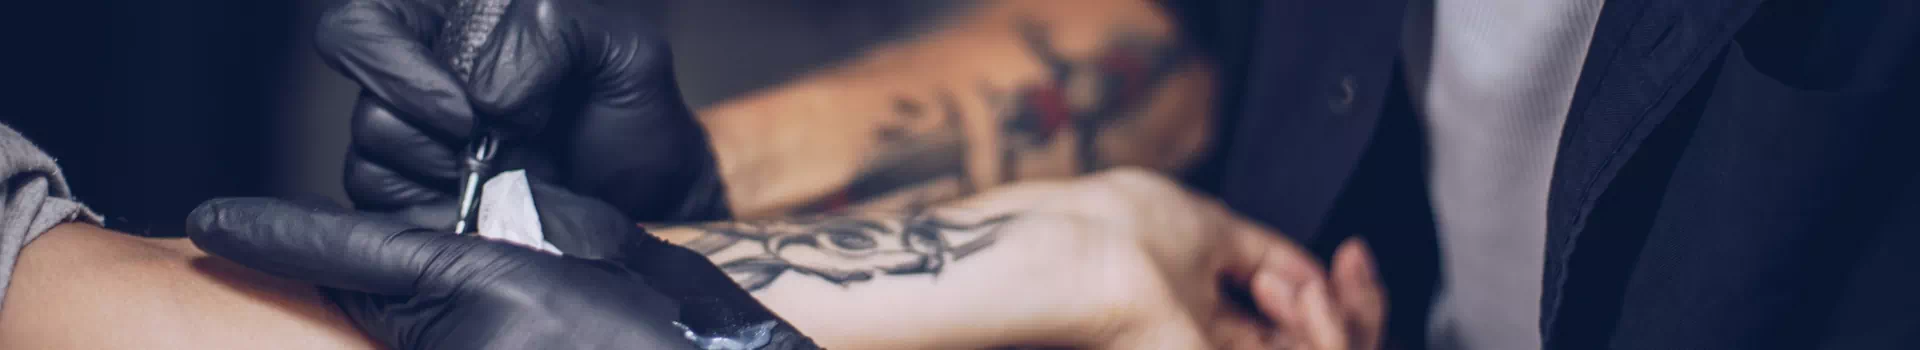 tatuowanie przedramienia